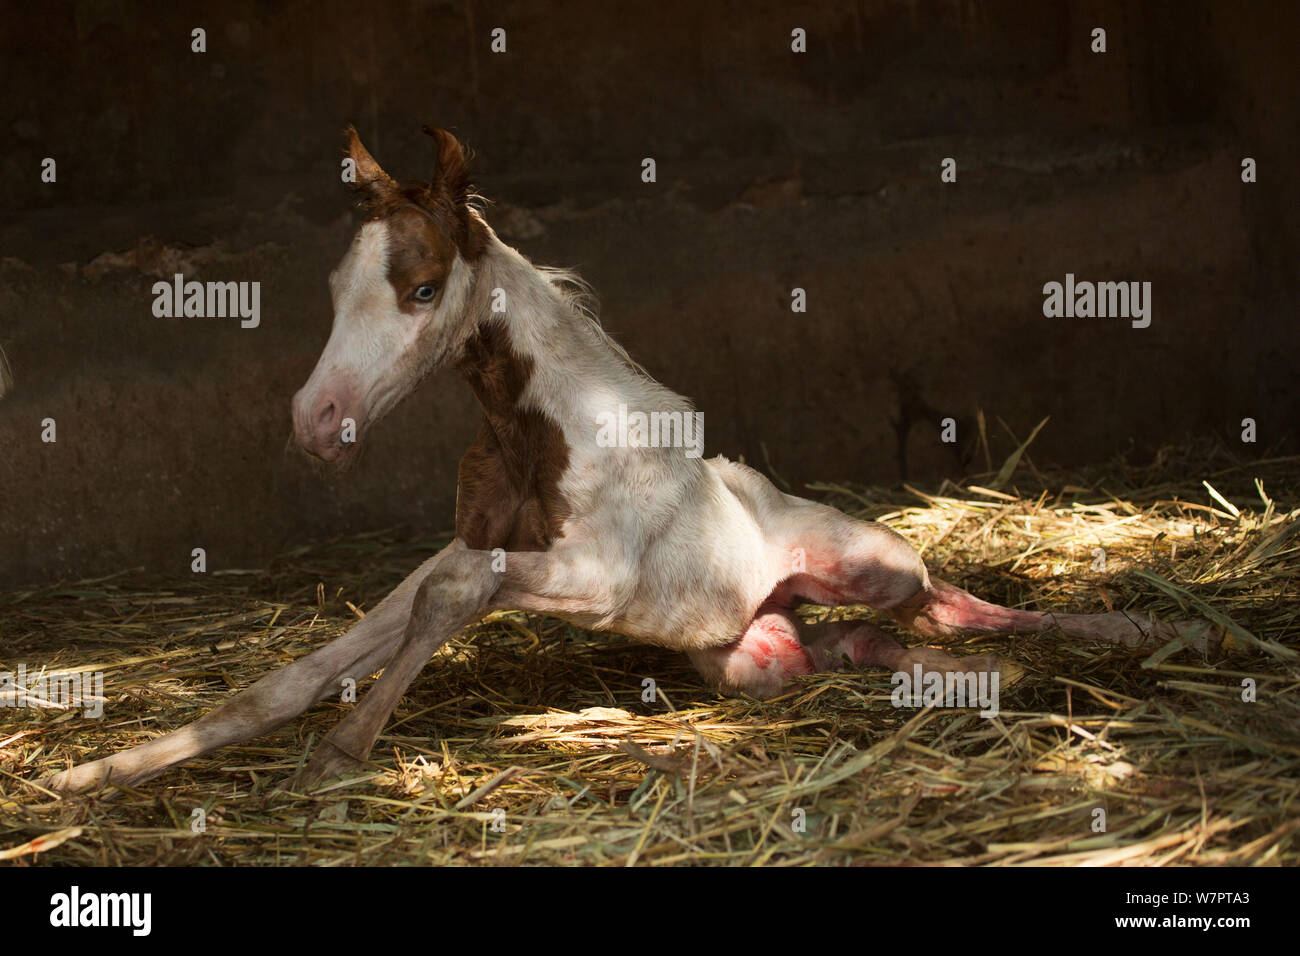 Un neonato Kathiawari horse colt, ancora coperto con placenta, tenta di alzarsi in piedi per la prima volta, Porbandar, Gujarat, India. Foto Stock